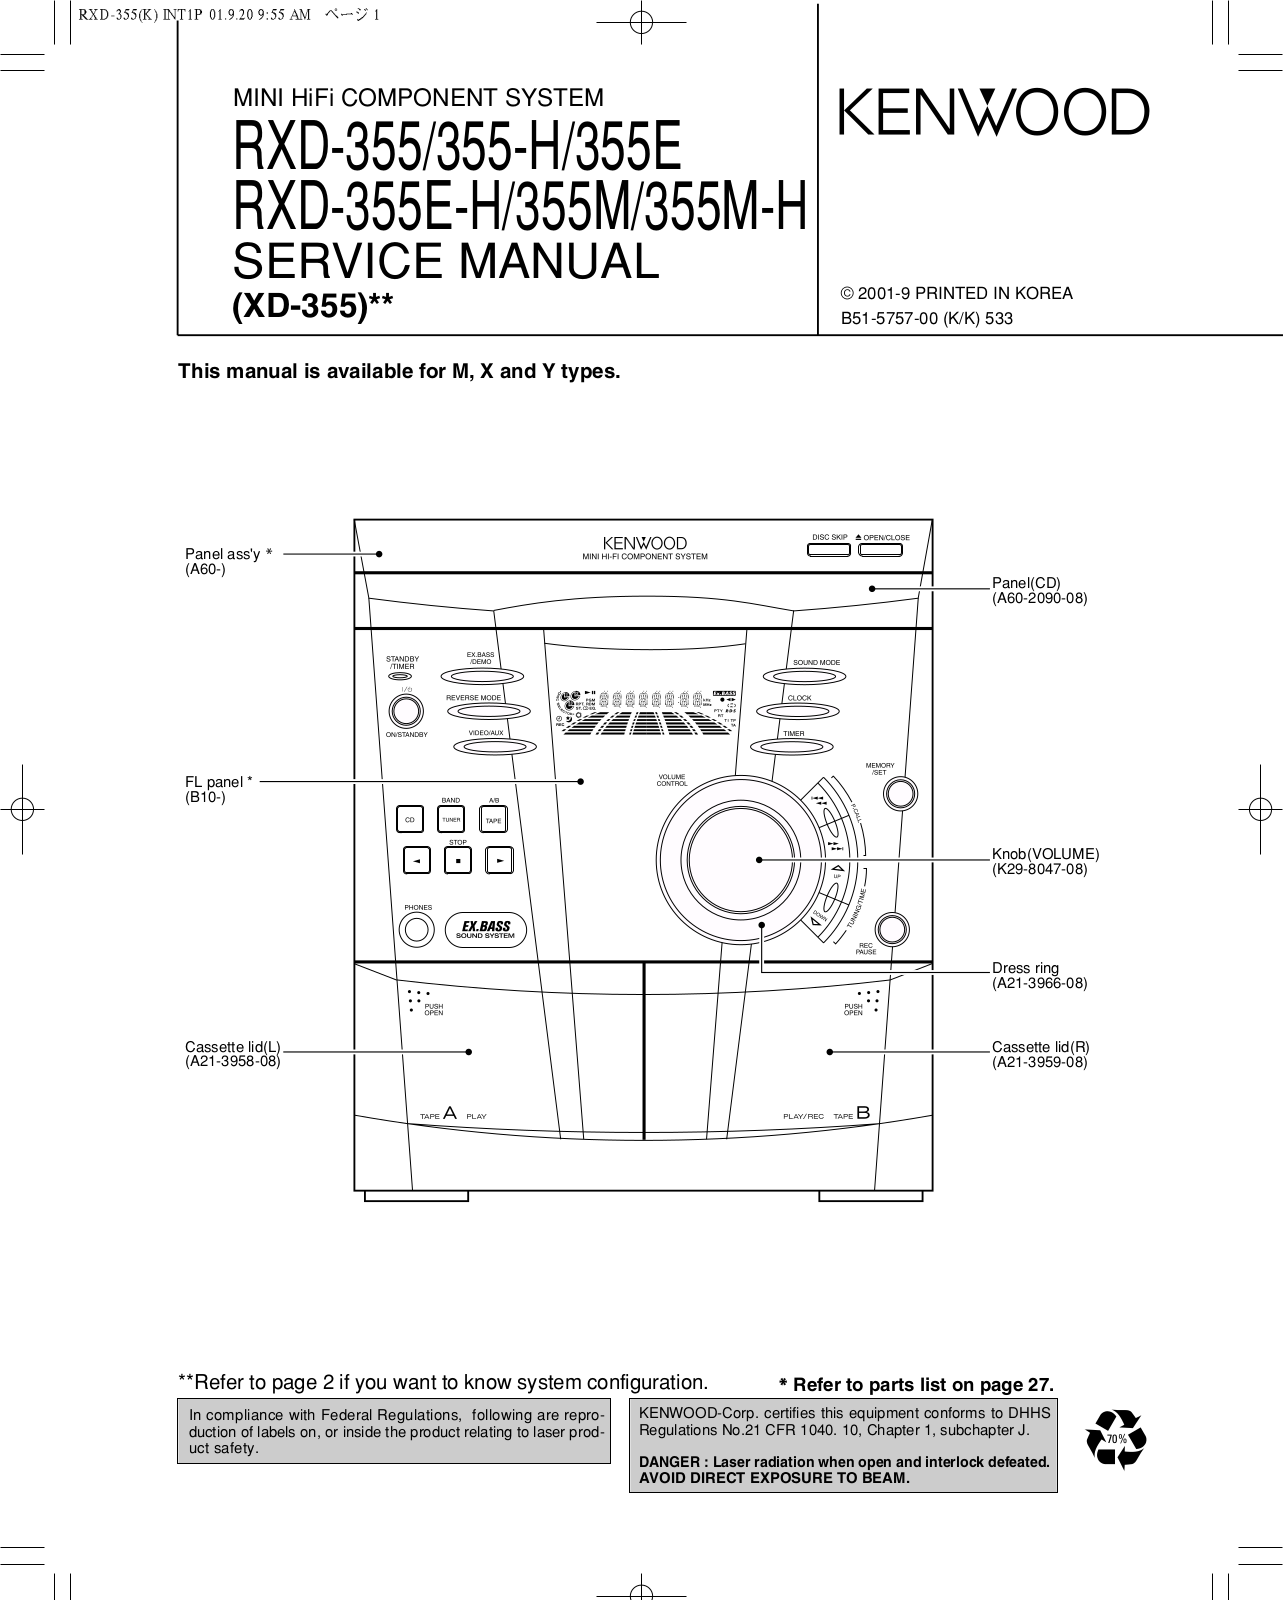 Kenwood RXD-355 Service manual